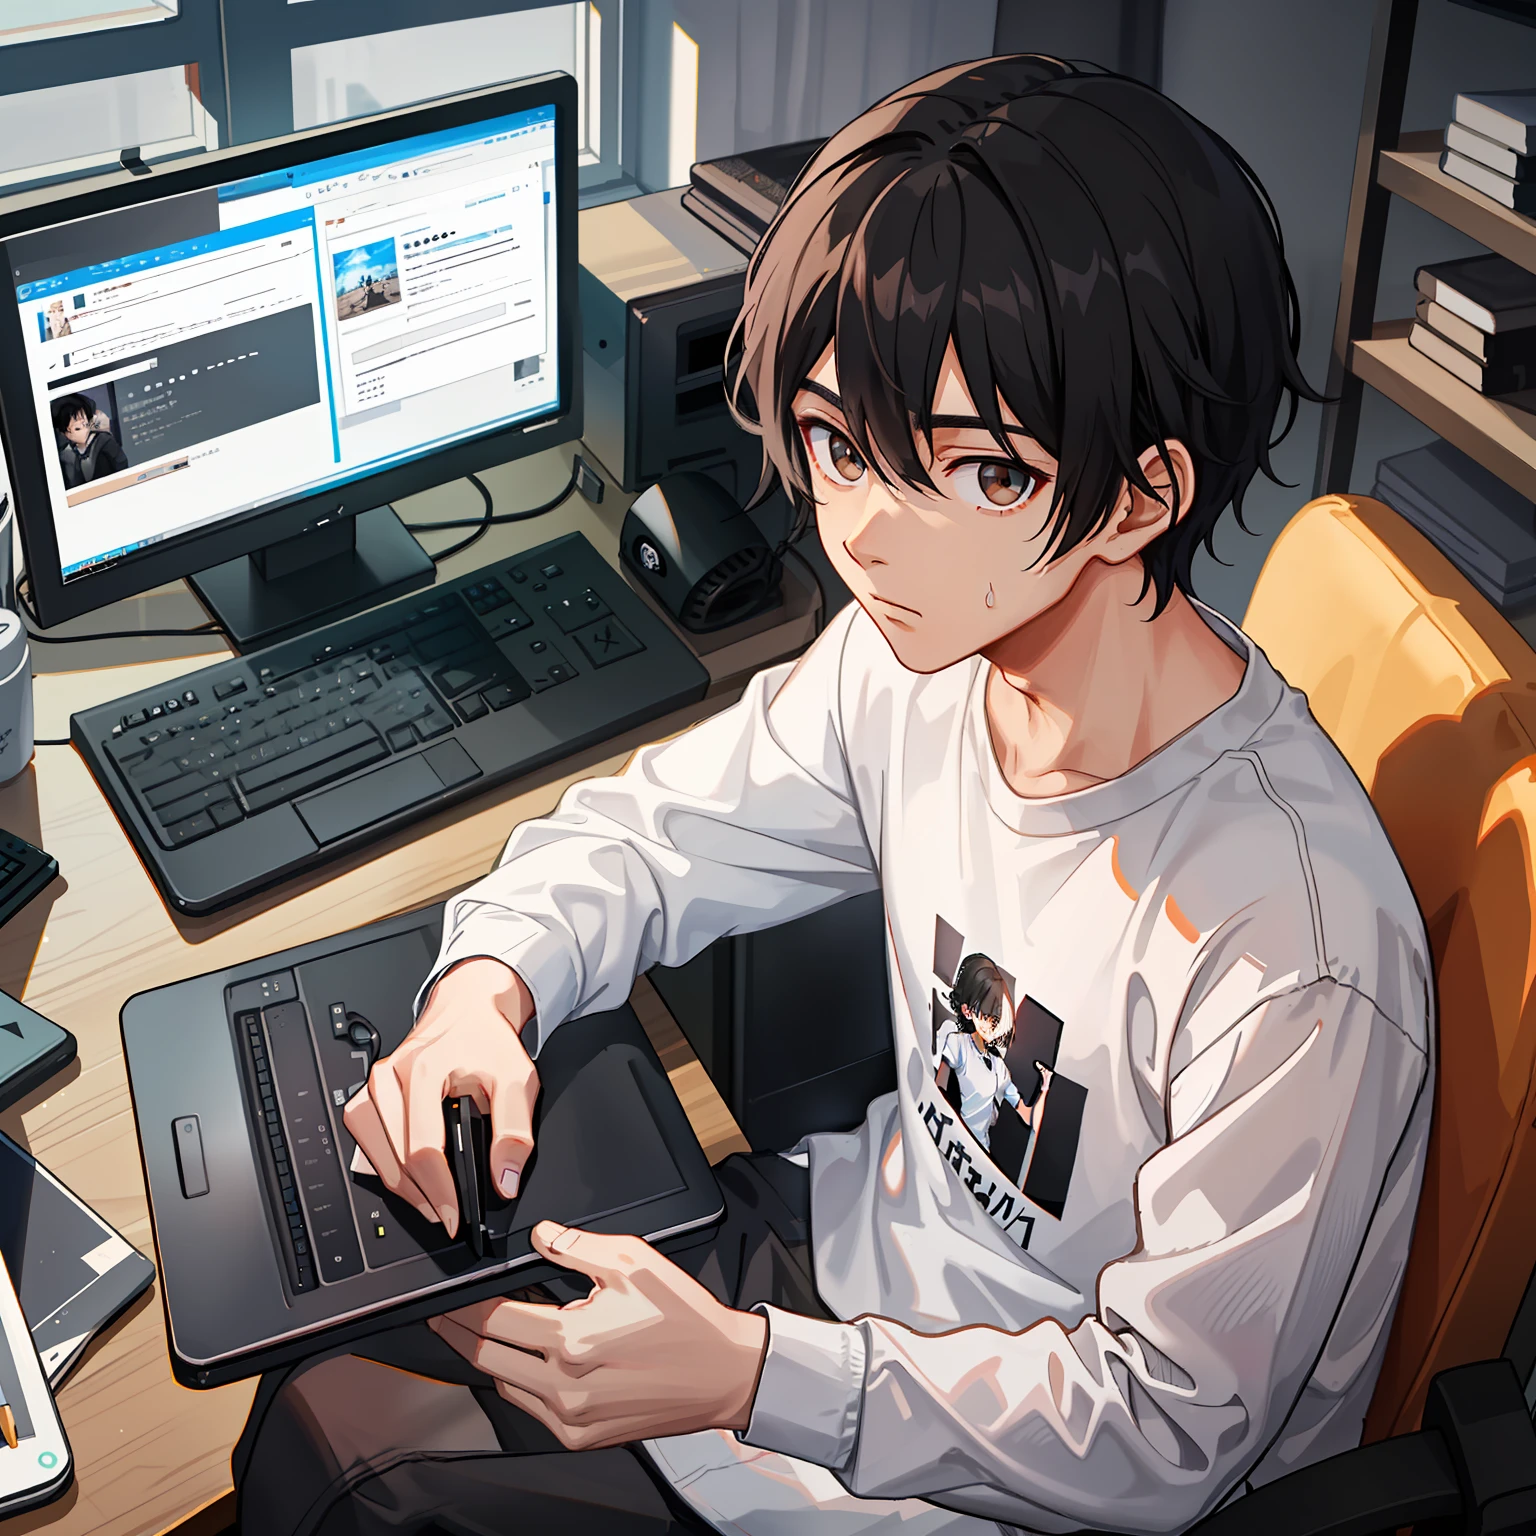 "一个有着黑色短波浪发的男孩，穿白衬衫和黑色运动裤，坐在电脑前，深棕色眼睛。